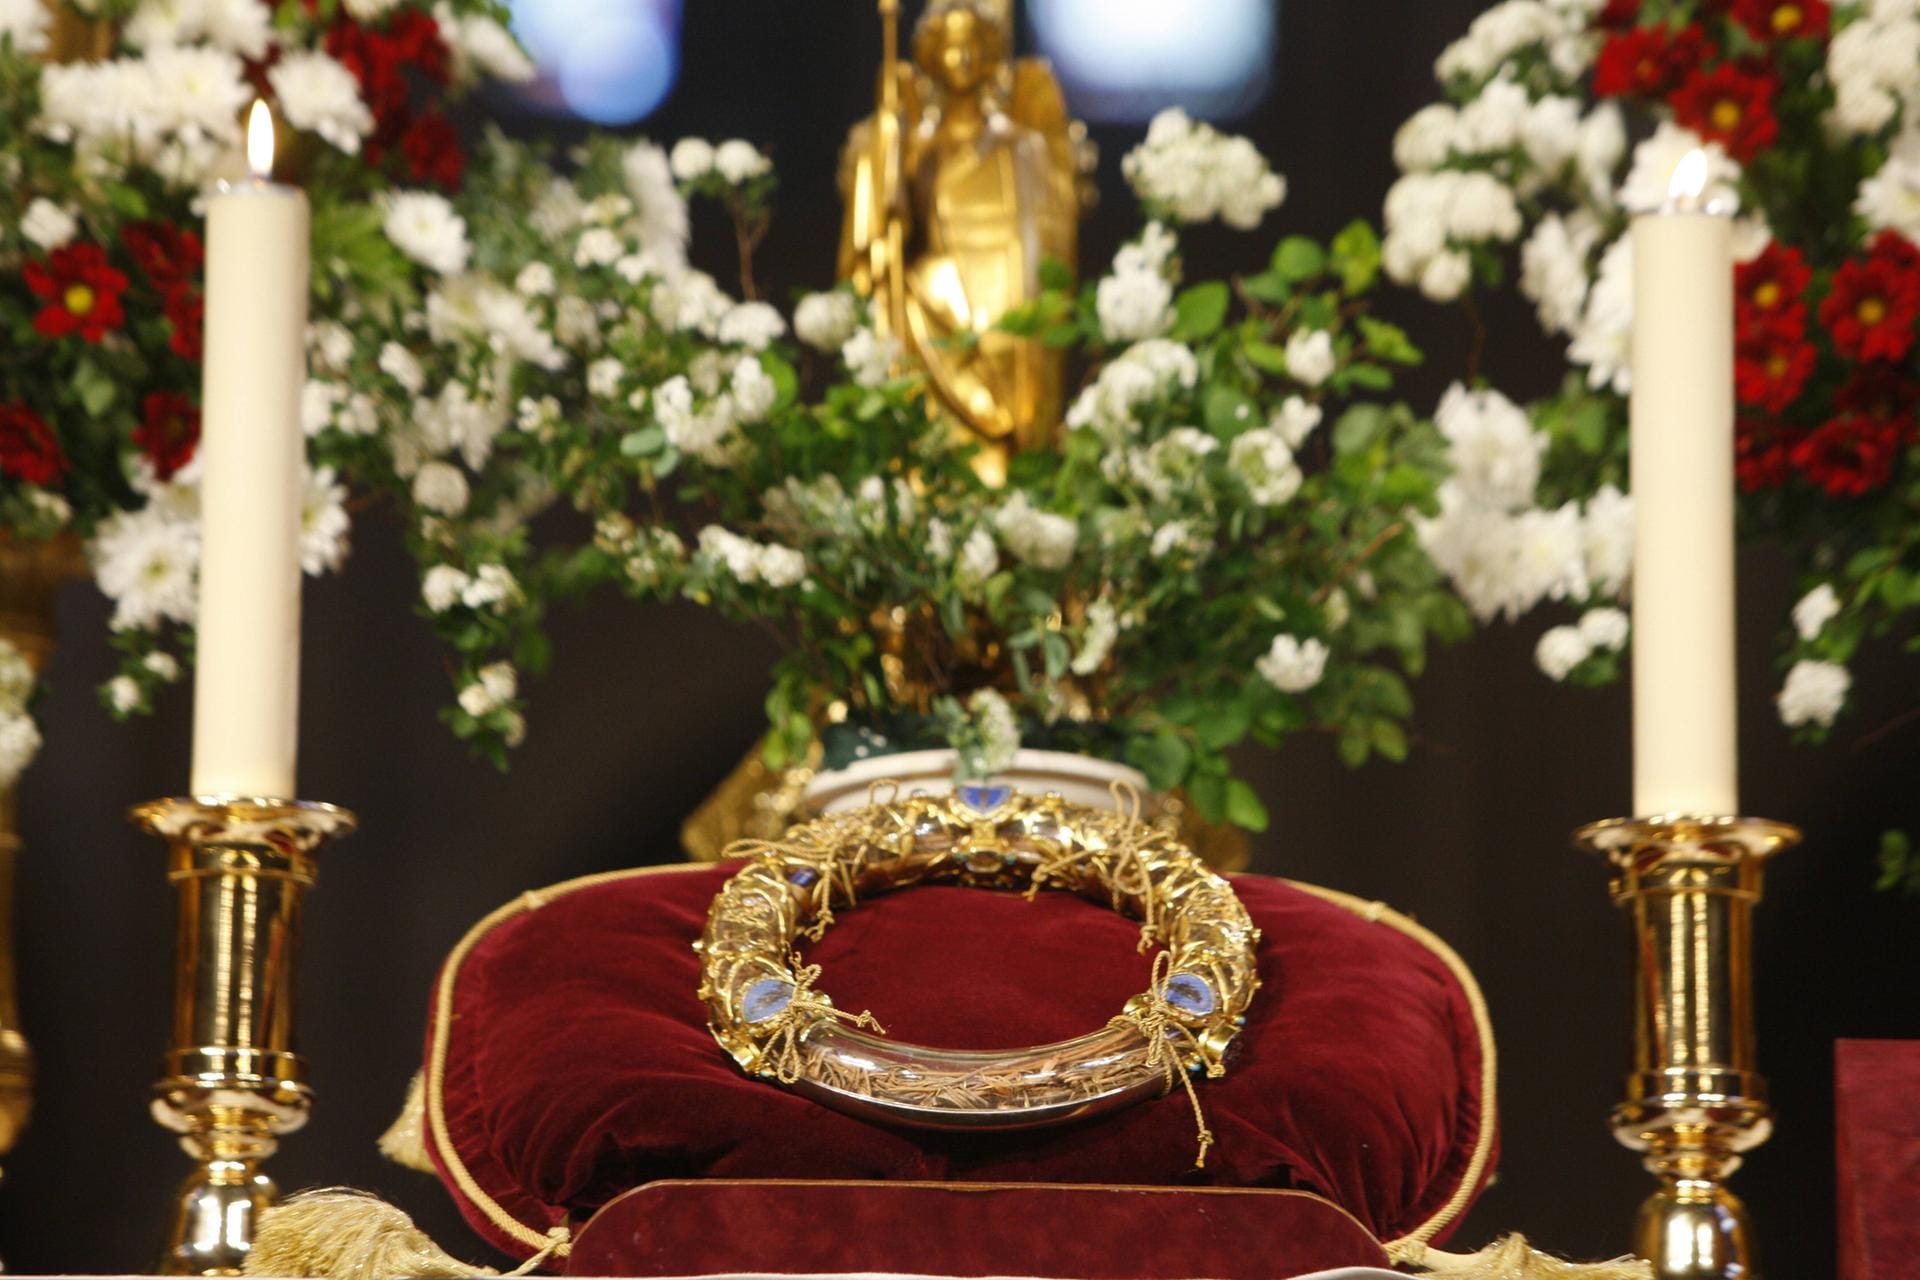 Dornenkrone: König Ludwig IX. kaufte diese Reliquie. Sie soll die Dornenkrone Christi darstellen.